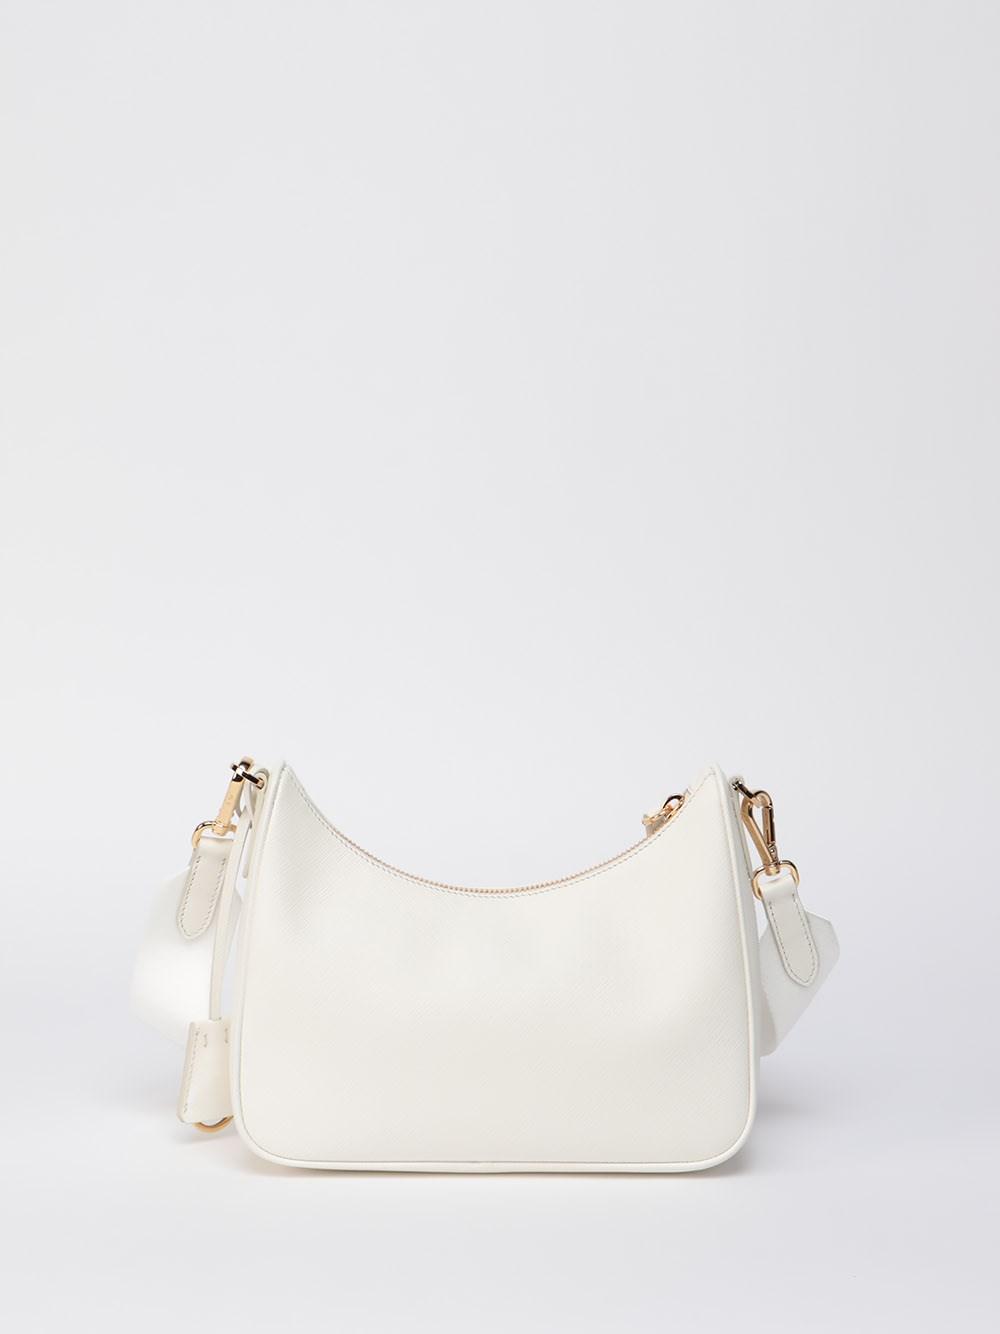 Prada Saffiano Lux Re-Edition 2005 Shoulder Bag - White Crossbody Bags,  Handbags - PRA883788